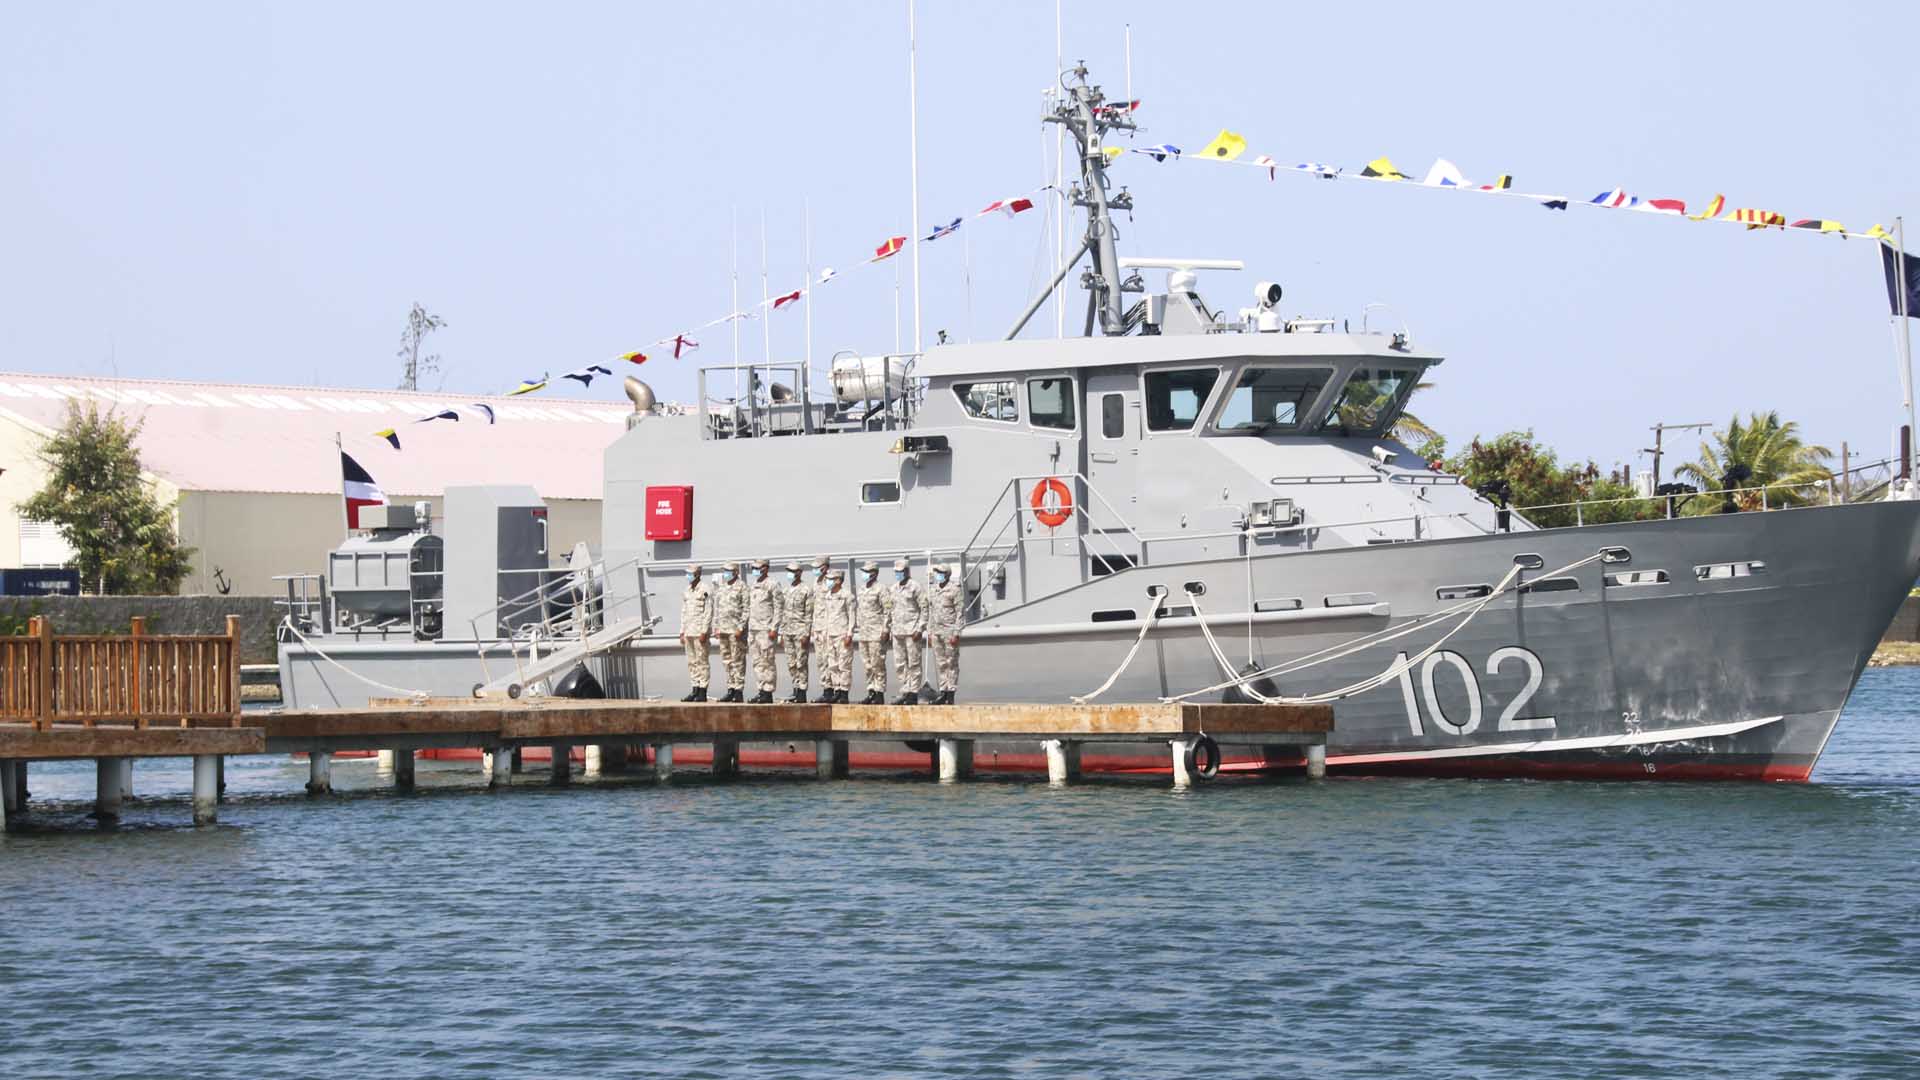 Fuerzas Armadas de Guyana Metal-Shark-Delivers-New-Patrol-Boat-to-Domincan-Republic-Navy-2020-Betelgeuse